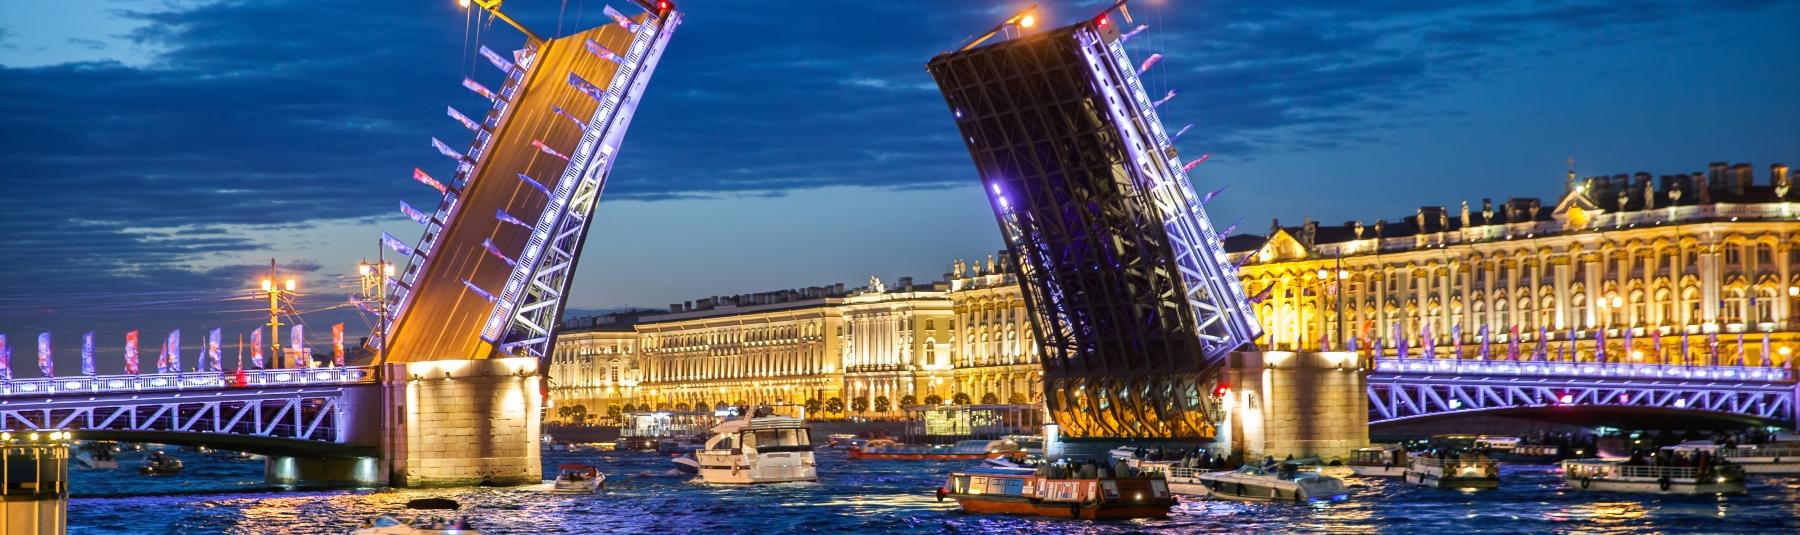 Ночные прогулки на теплоходе «Петербургские разводные мосты» со скидкой до 56%